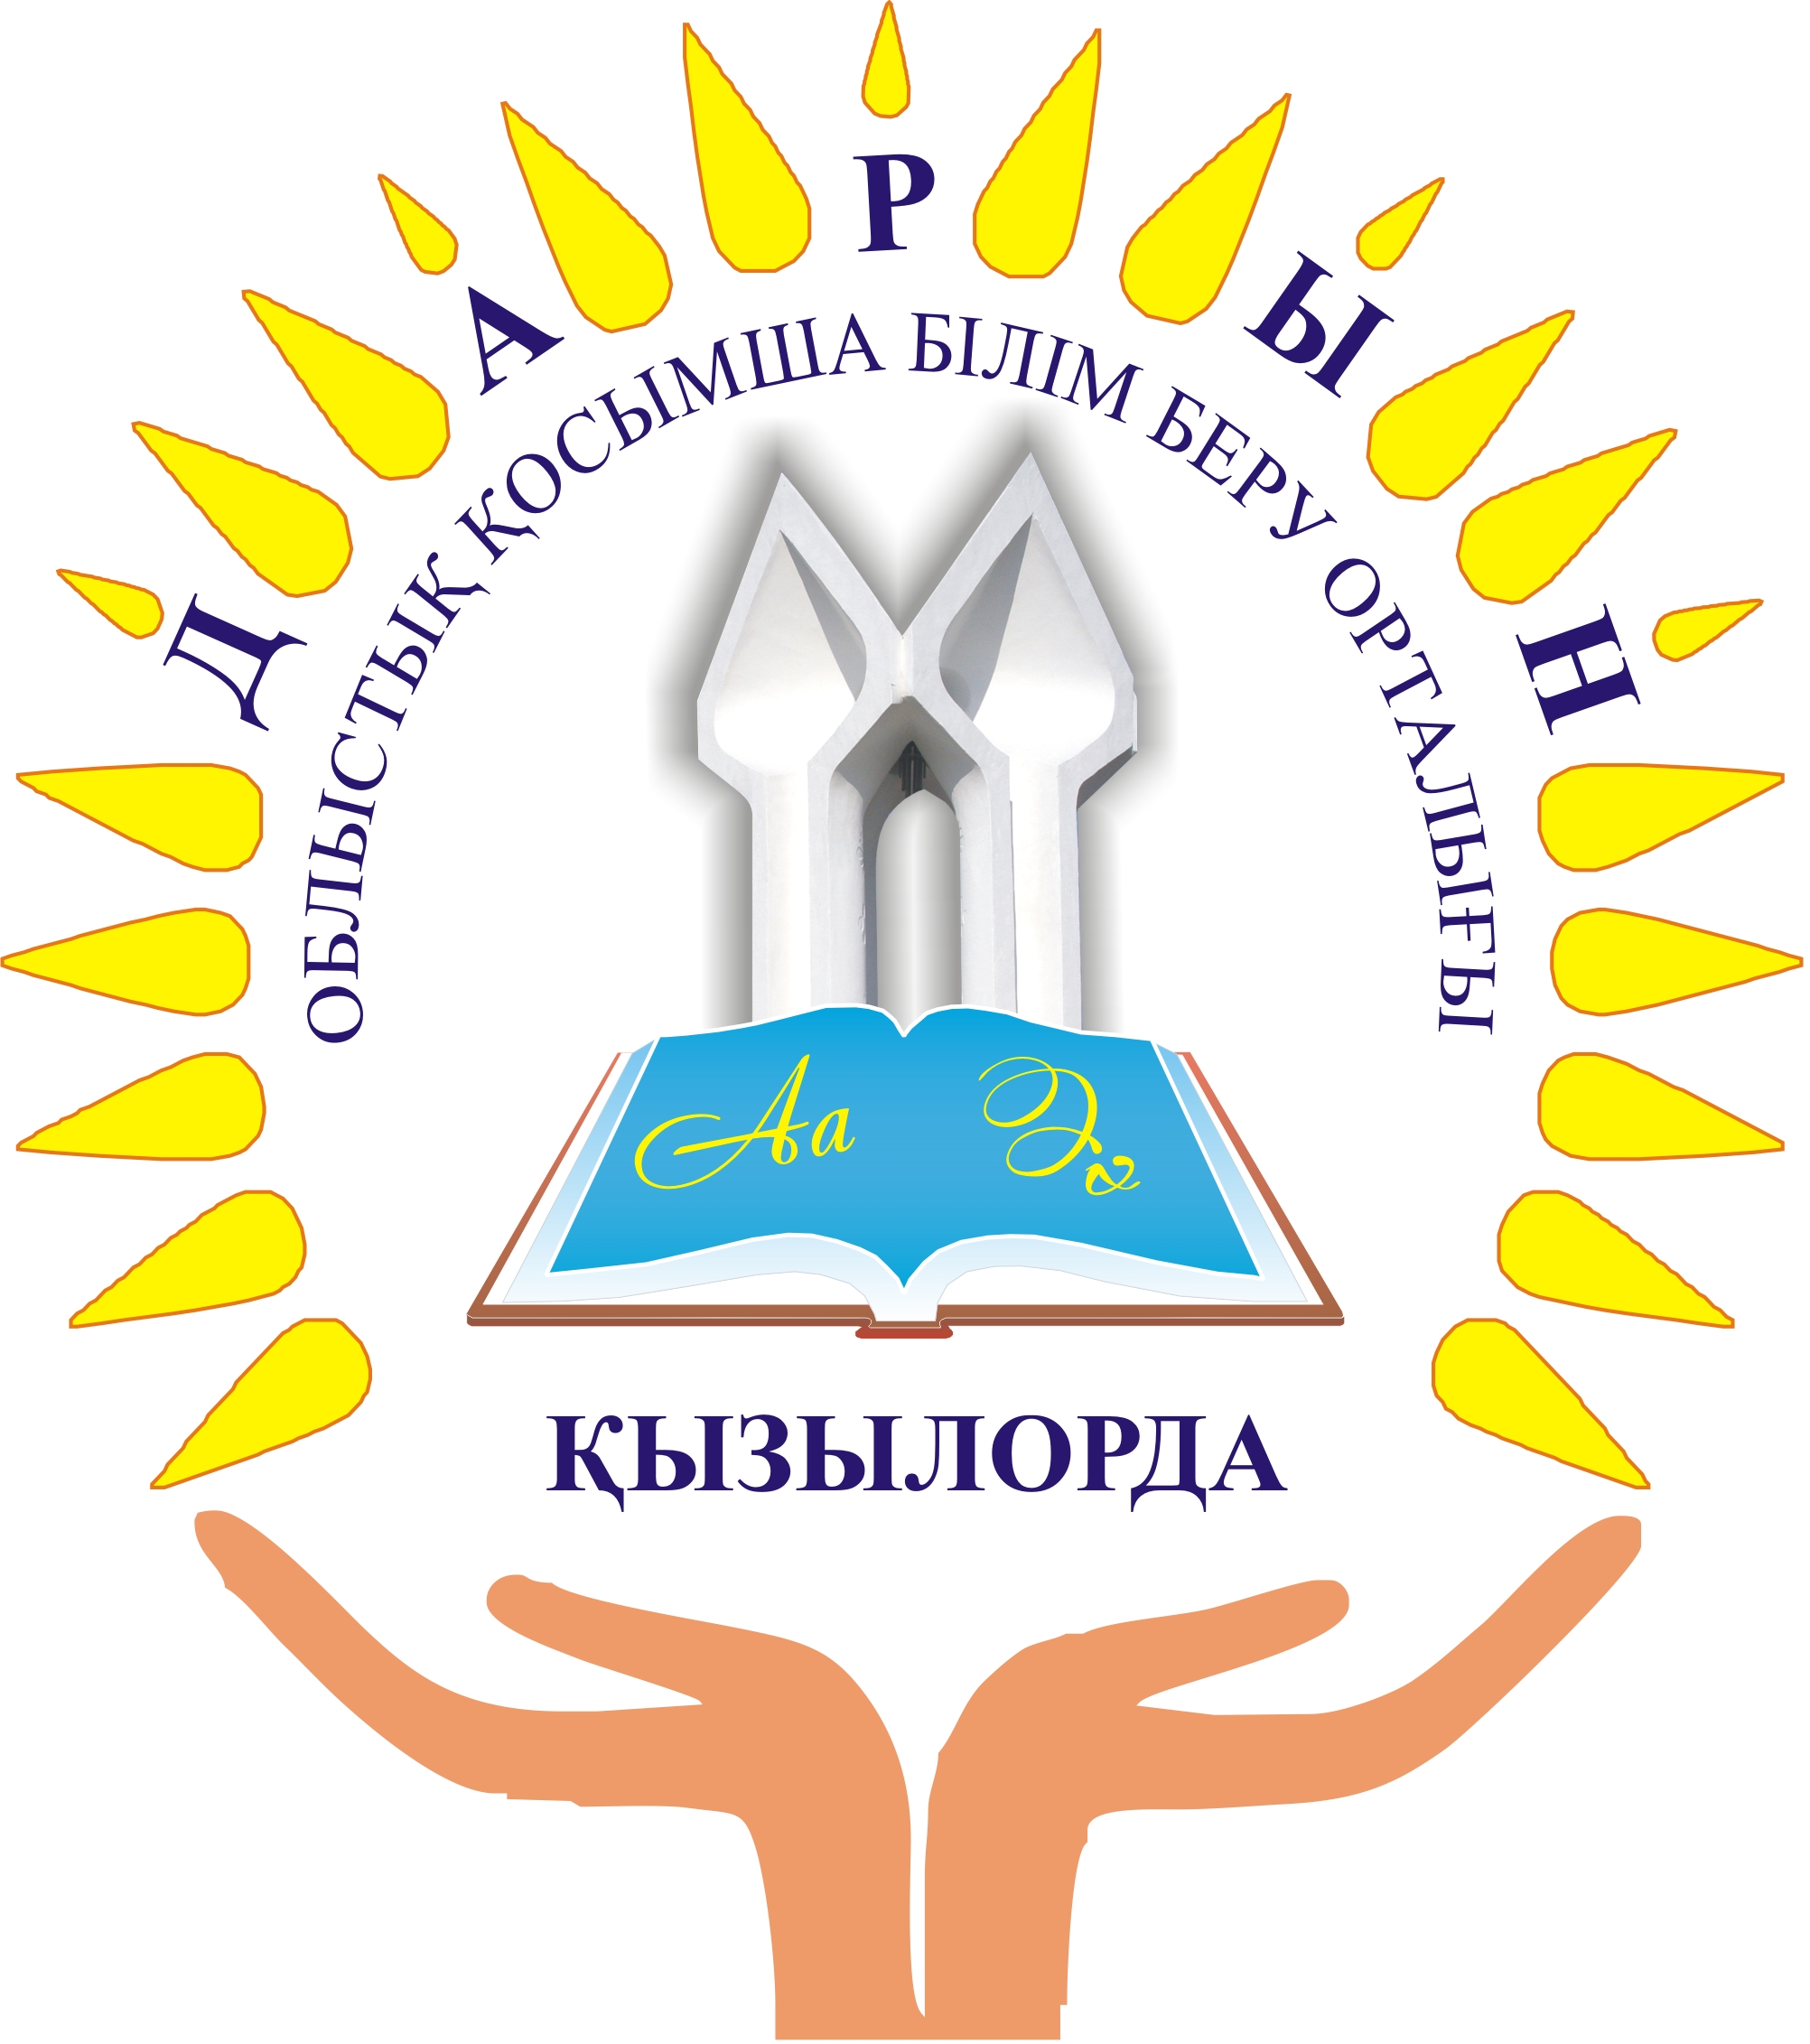 Білім беру орталығы. Дарын логотип. Центр Дарын. Кызылорда логотип. Астана дарыны логотип.